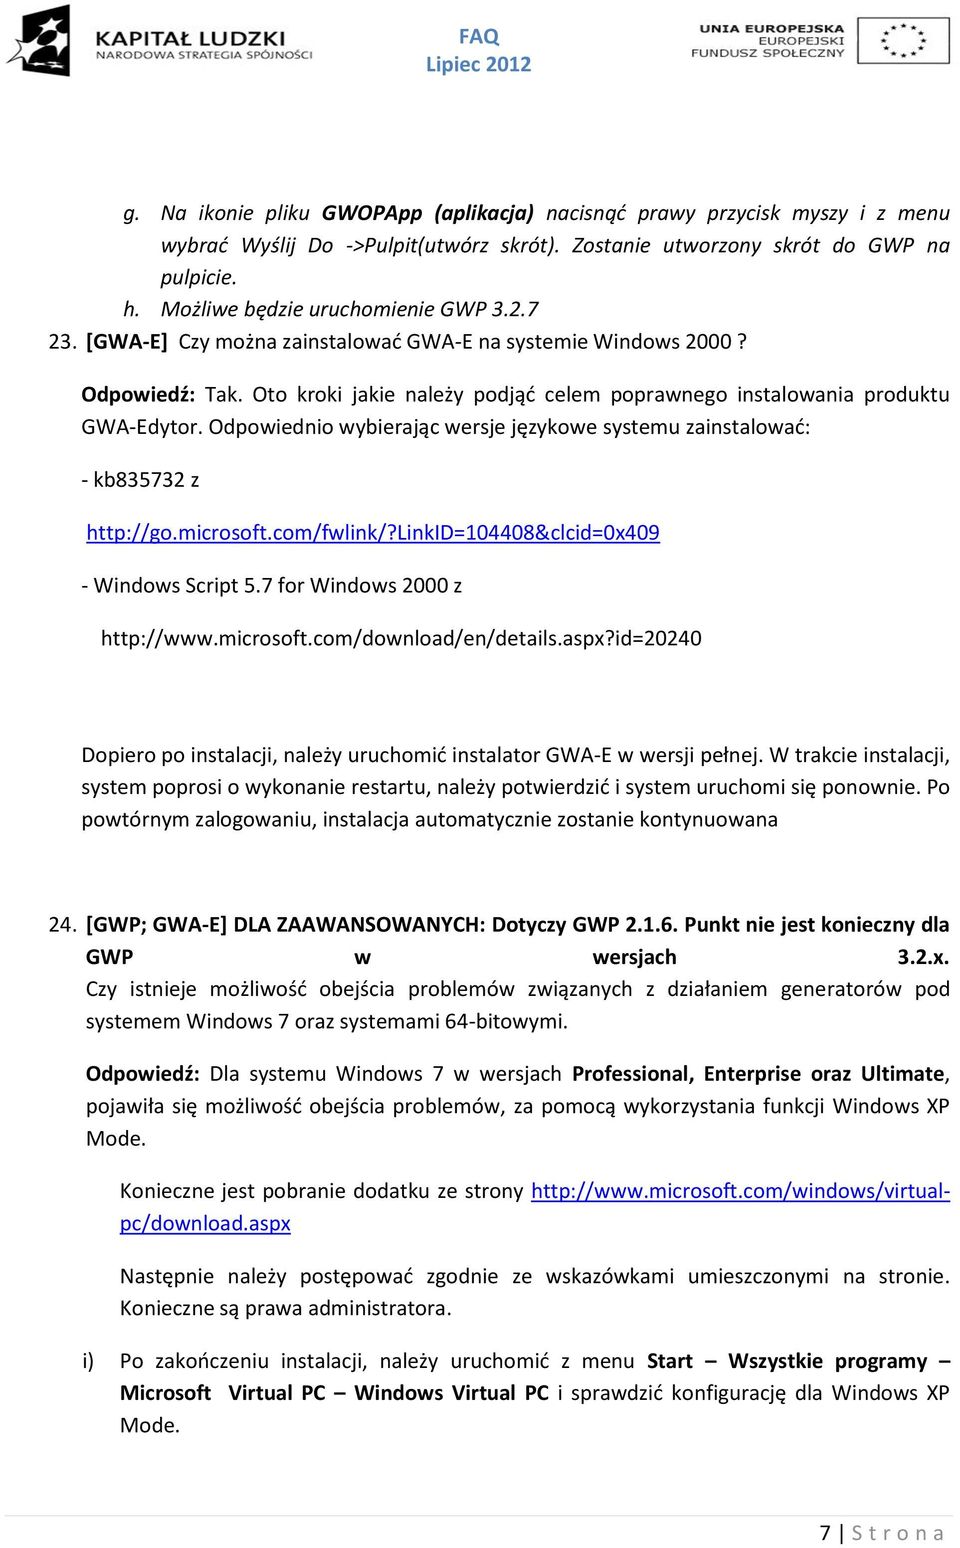 Oto kroki jakie należy podjąć celem poprawnego instalowania produktu GWA-Edytor. Odpowiednio wybierając wersje językowe systemu zainstalować: - kb835732 z http://go.microsoft.com/fwlink/?